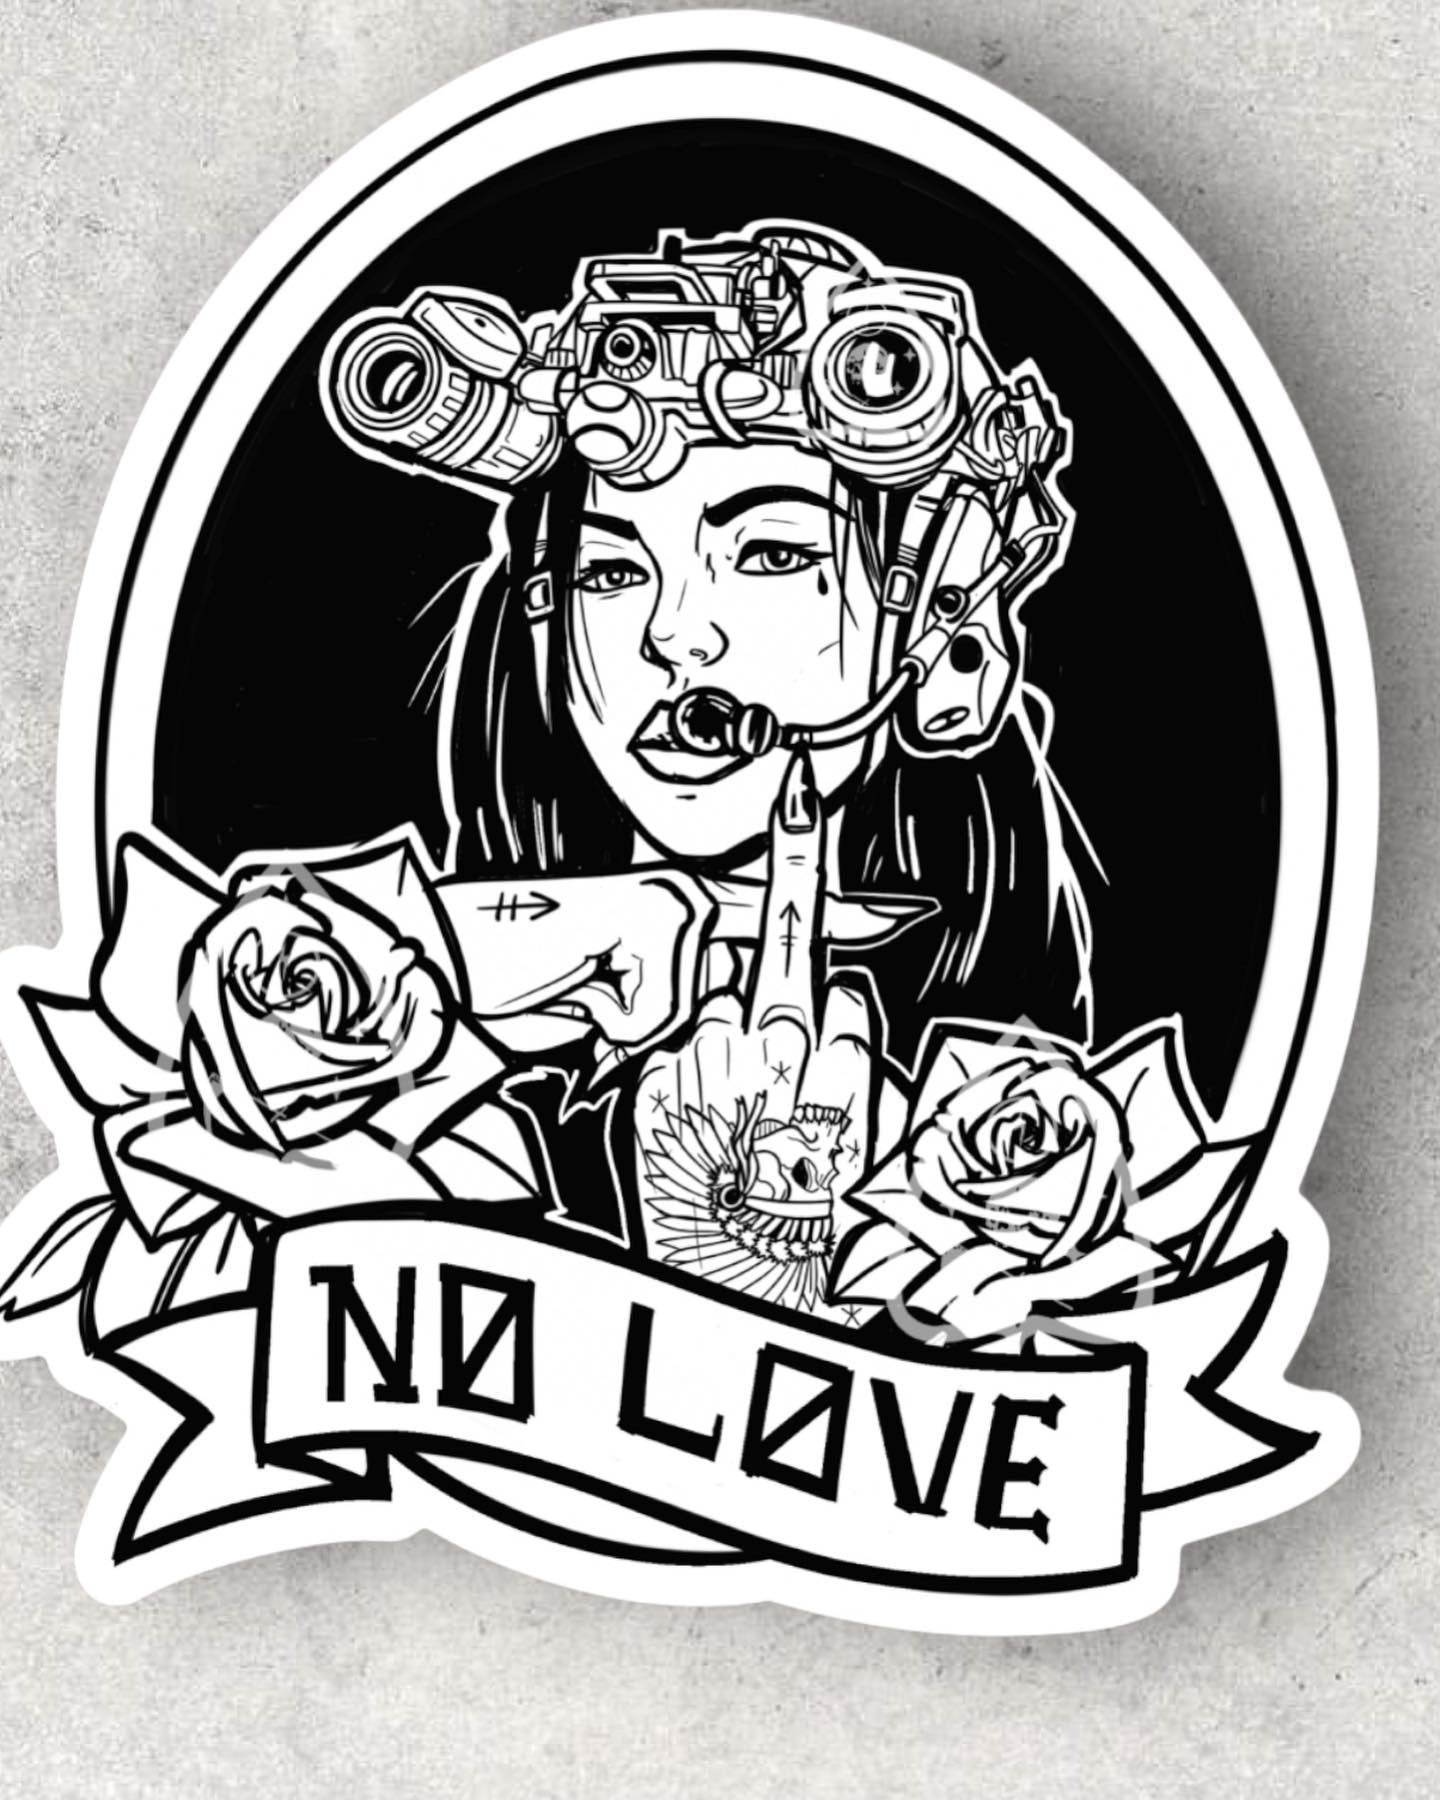 "No love" die cut slap